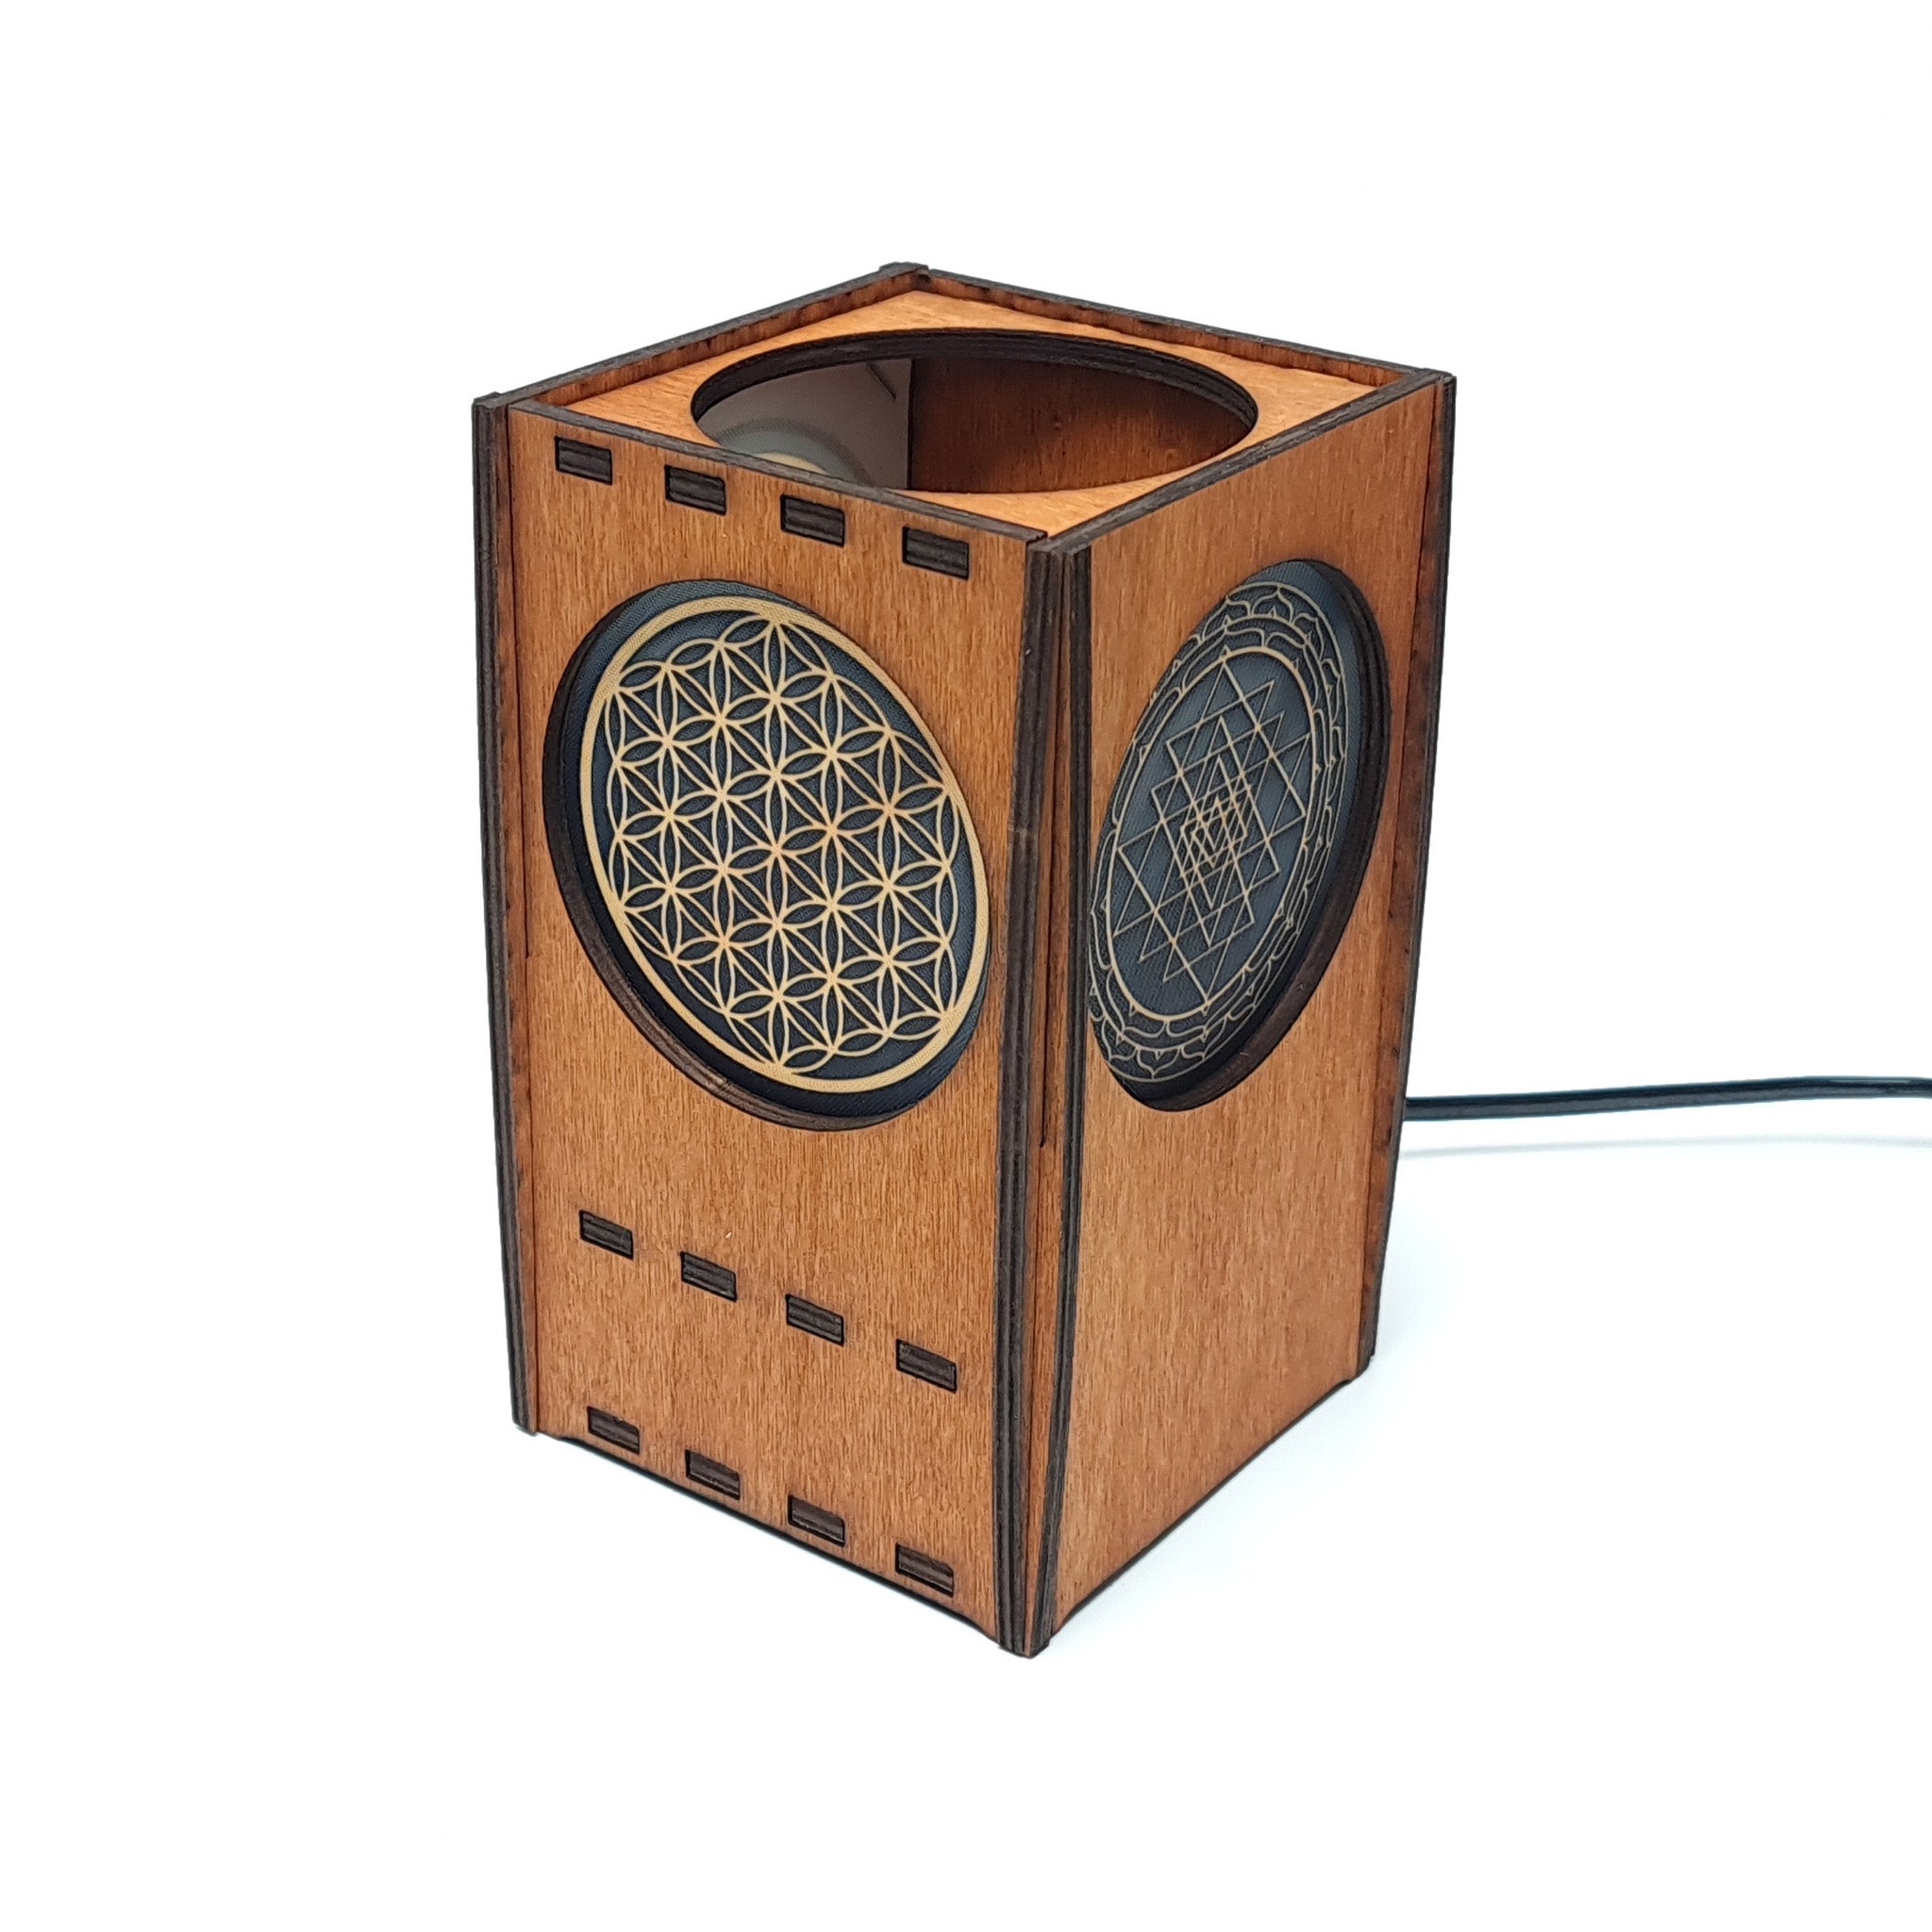 Taschentuchbox aus Holz für dein Zuhause  Nanino Design – Nanino Design  Onlineshop